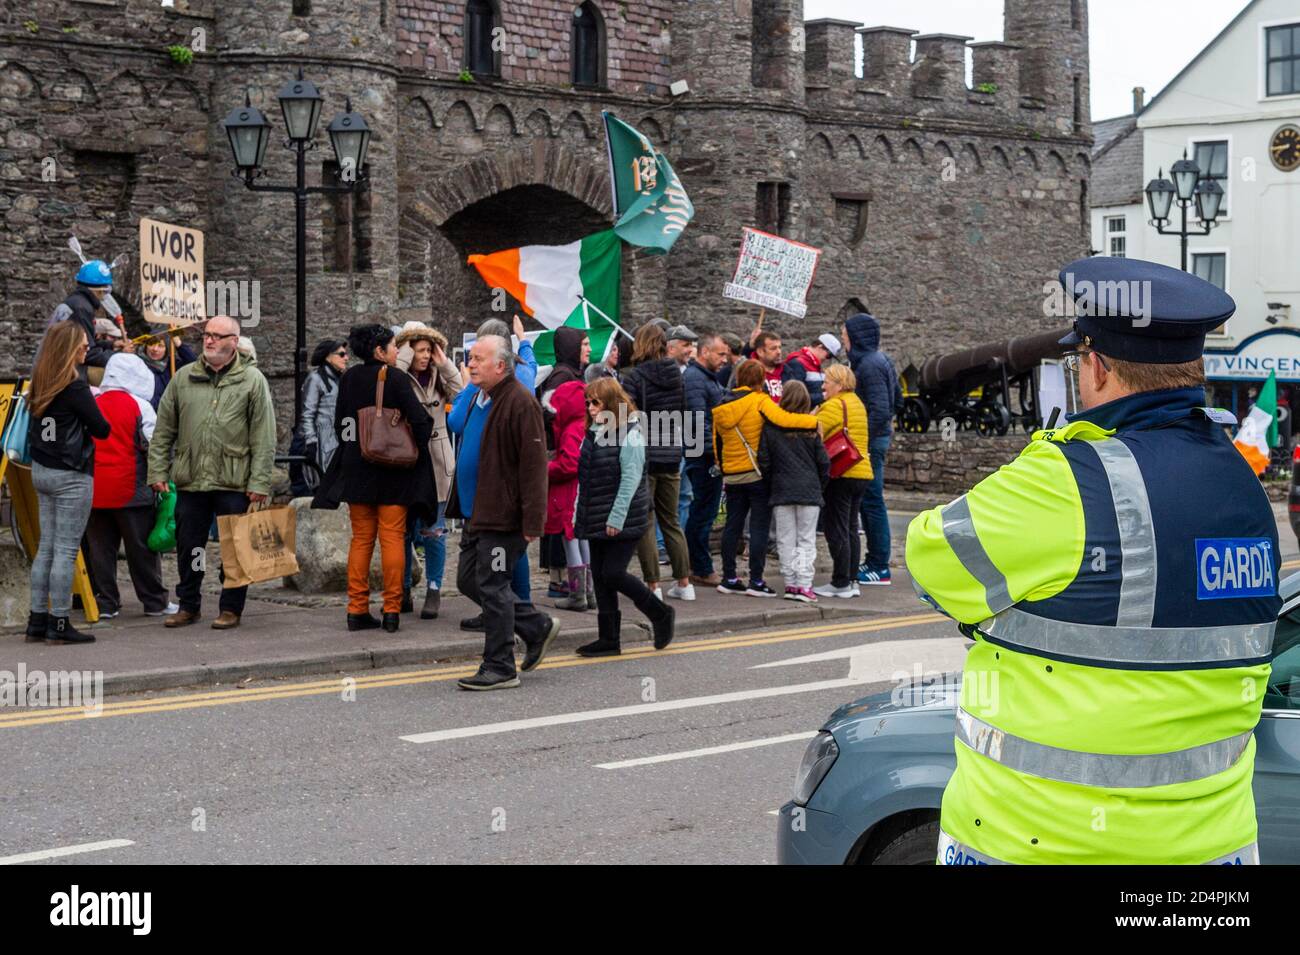 Macroom, West Cork, Irland. Oktober 2020. Eine kleine Gruppe von etwa 40 Menschen versammelten sich heute Nachmittag vor den Toren des Machekor-Schlosses, um gegen das zu protestieren, was die Organisatorin Elaine O'Shea als 'Krakische Beschränkungen' beschreibt. Die Demonstranten beklagten auch die Sperrbeschränkungen. Zusätzlich war die Veranstaltung eine Anti-Korruptions-Demonstration. Es gab eine Garda-Präsenz auf der Veranstaltung. Quelle: AG News/Alamy Live News Stockfoto